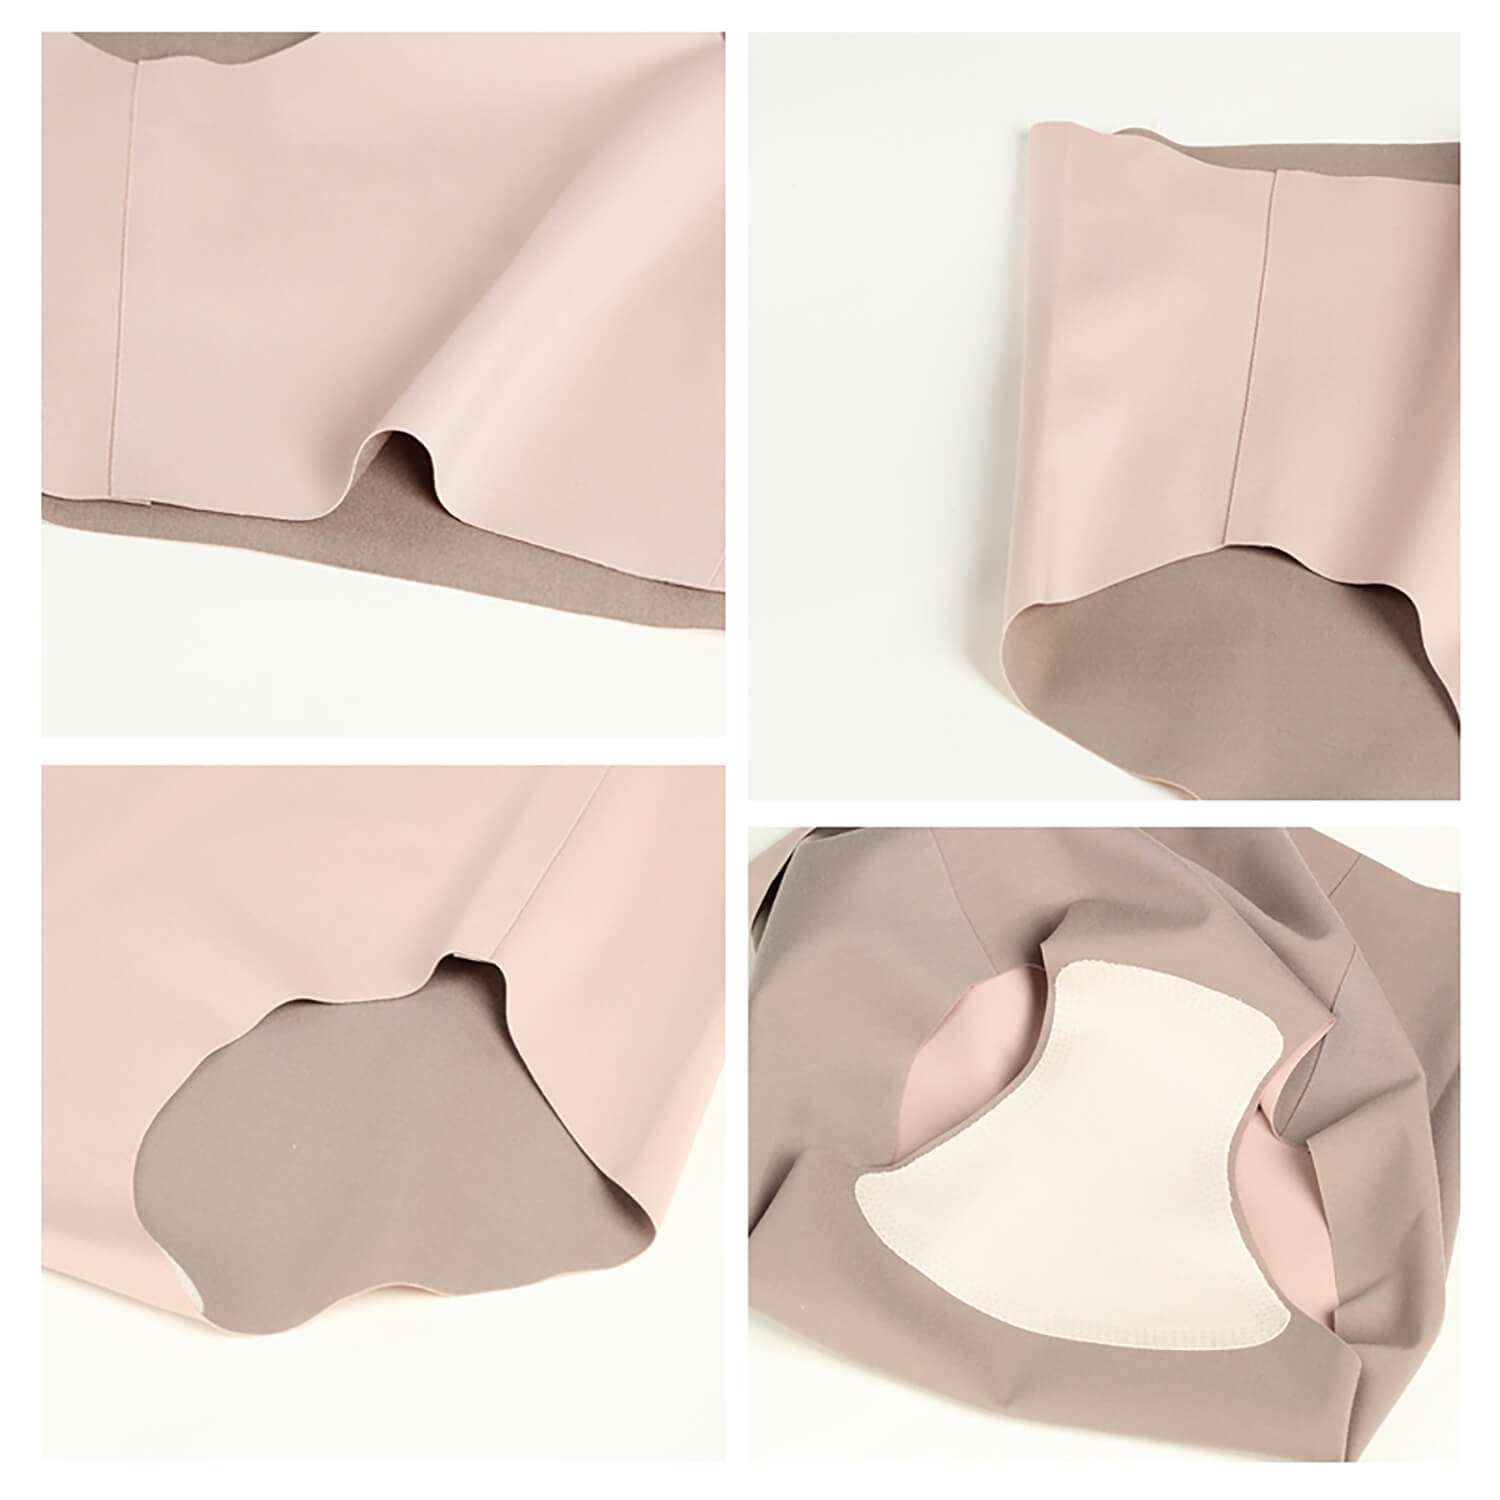 High elastic silk underwear for women, seamless mulberry silk mid-waist boxer briefs - slipintosoft